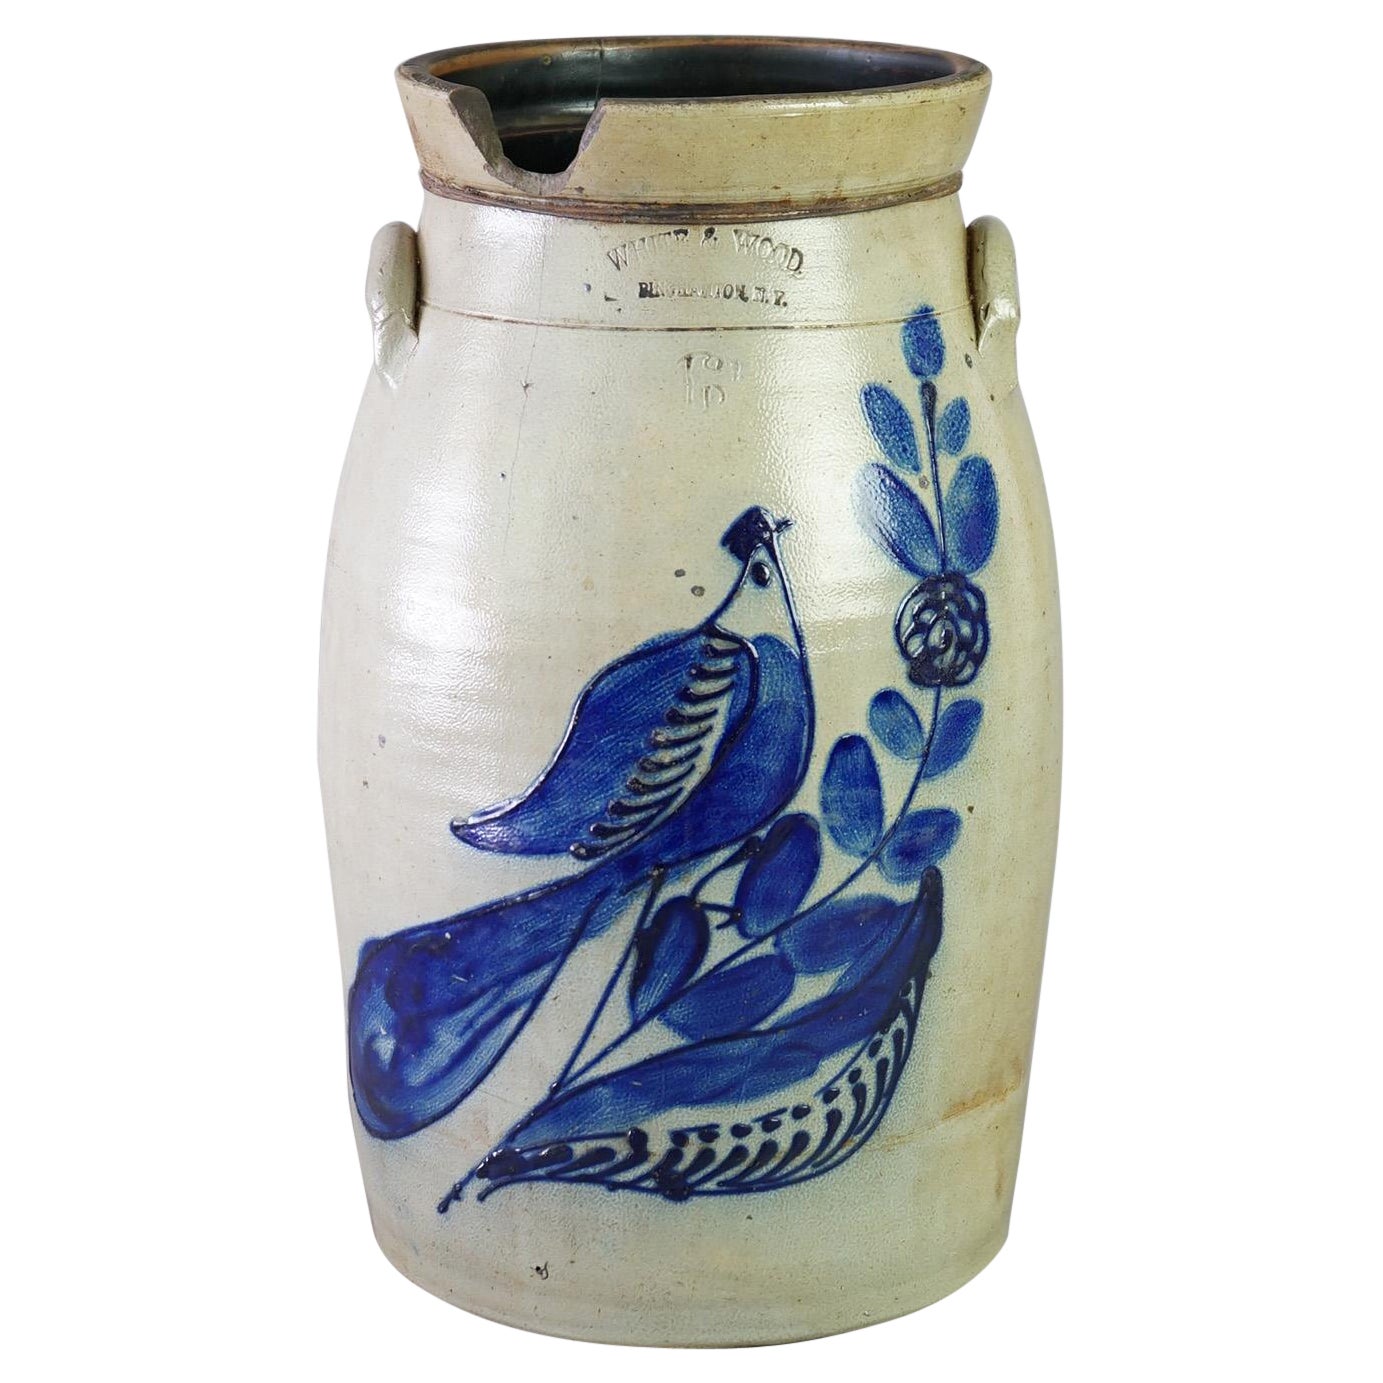 Antique Binghamton White & Wood Paddle Bird Blue Decorated Stoneware Churn c1870